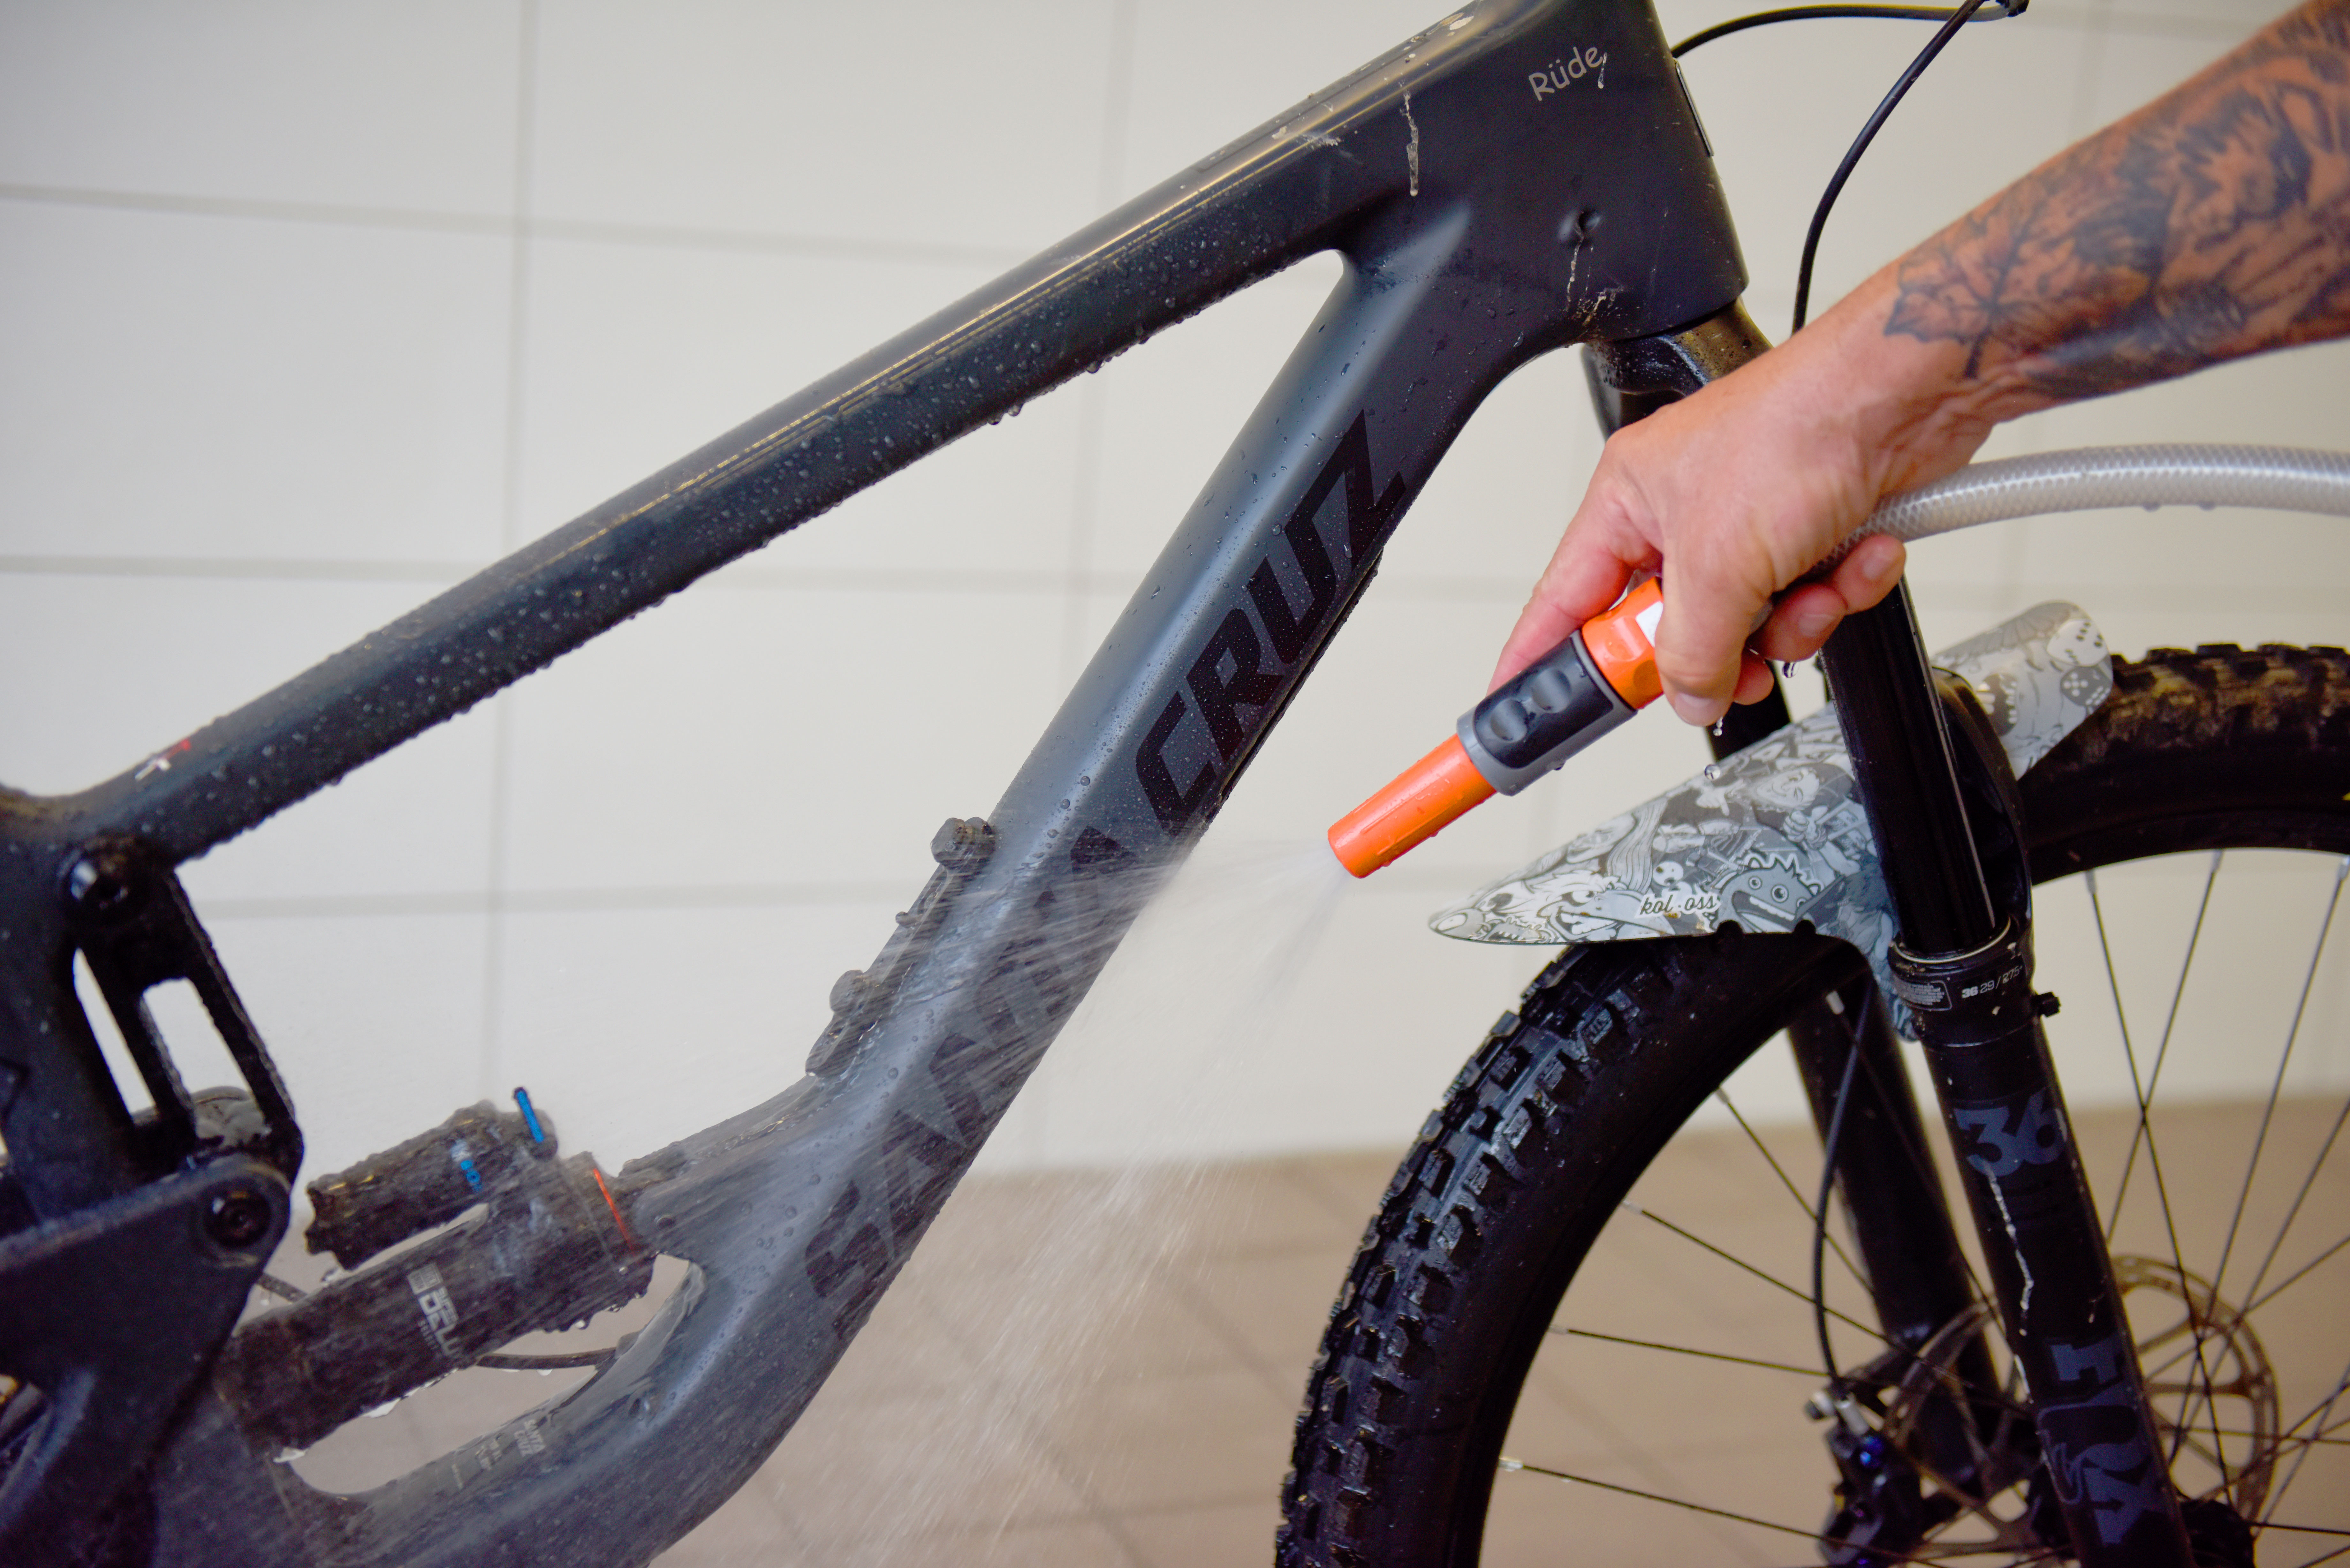 Fahrrad reinigen: Fahrrad wird mit einem Schlauch und klarem Wasser abgewaschen